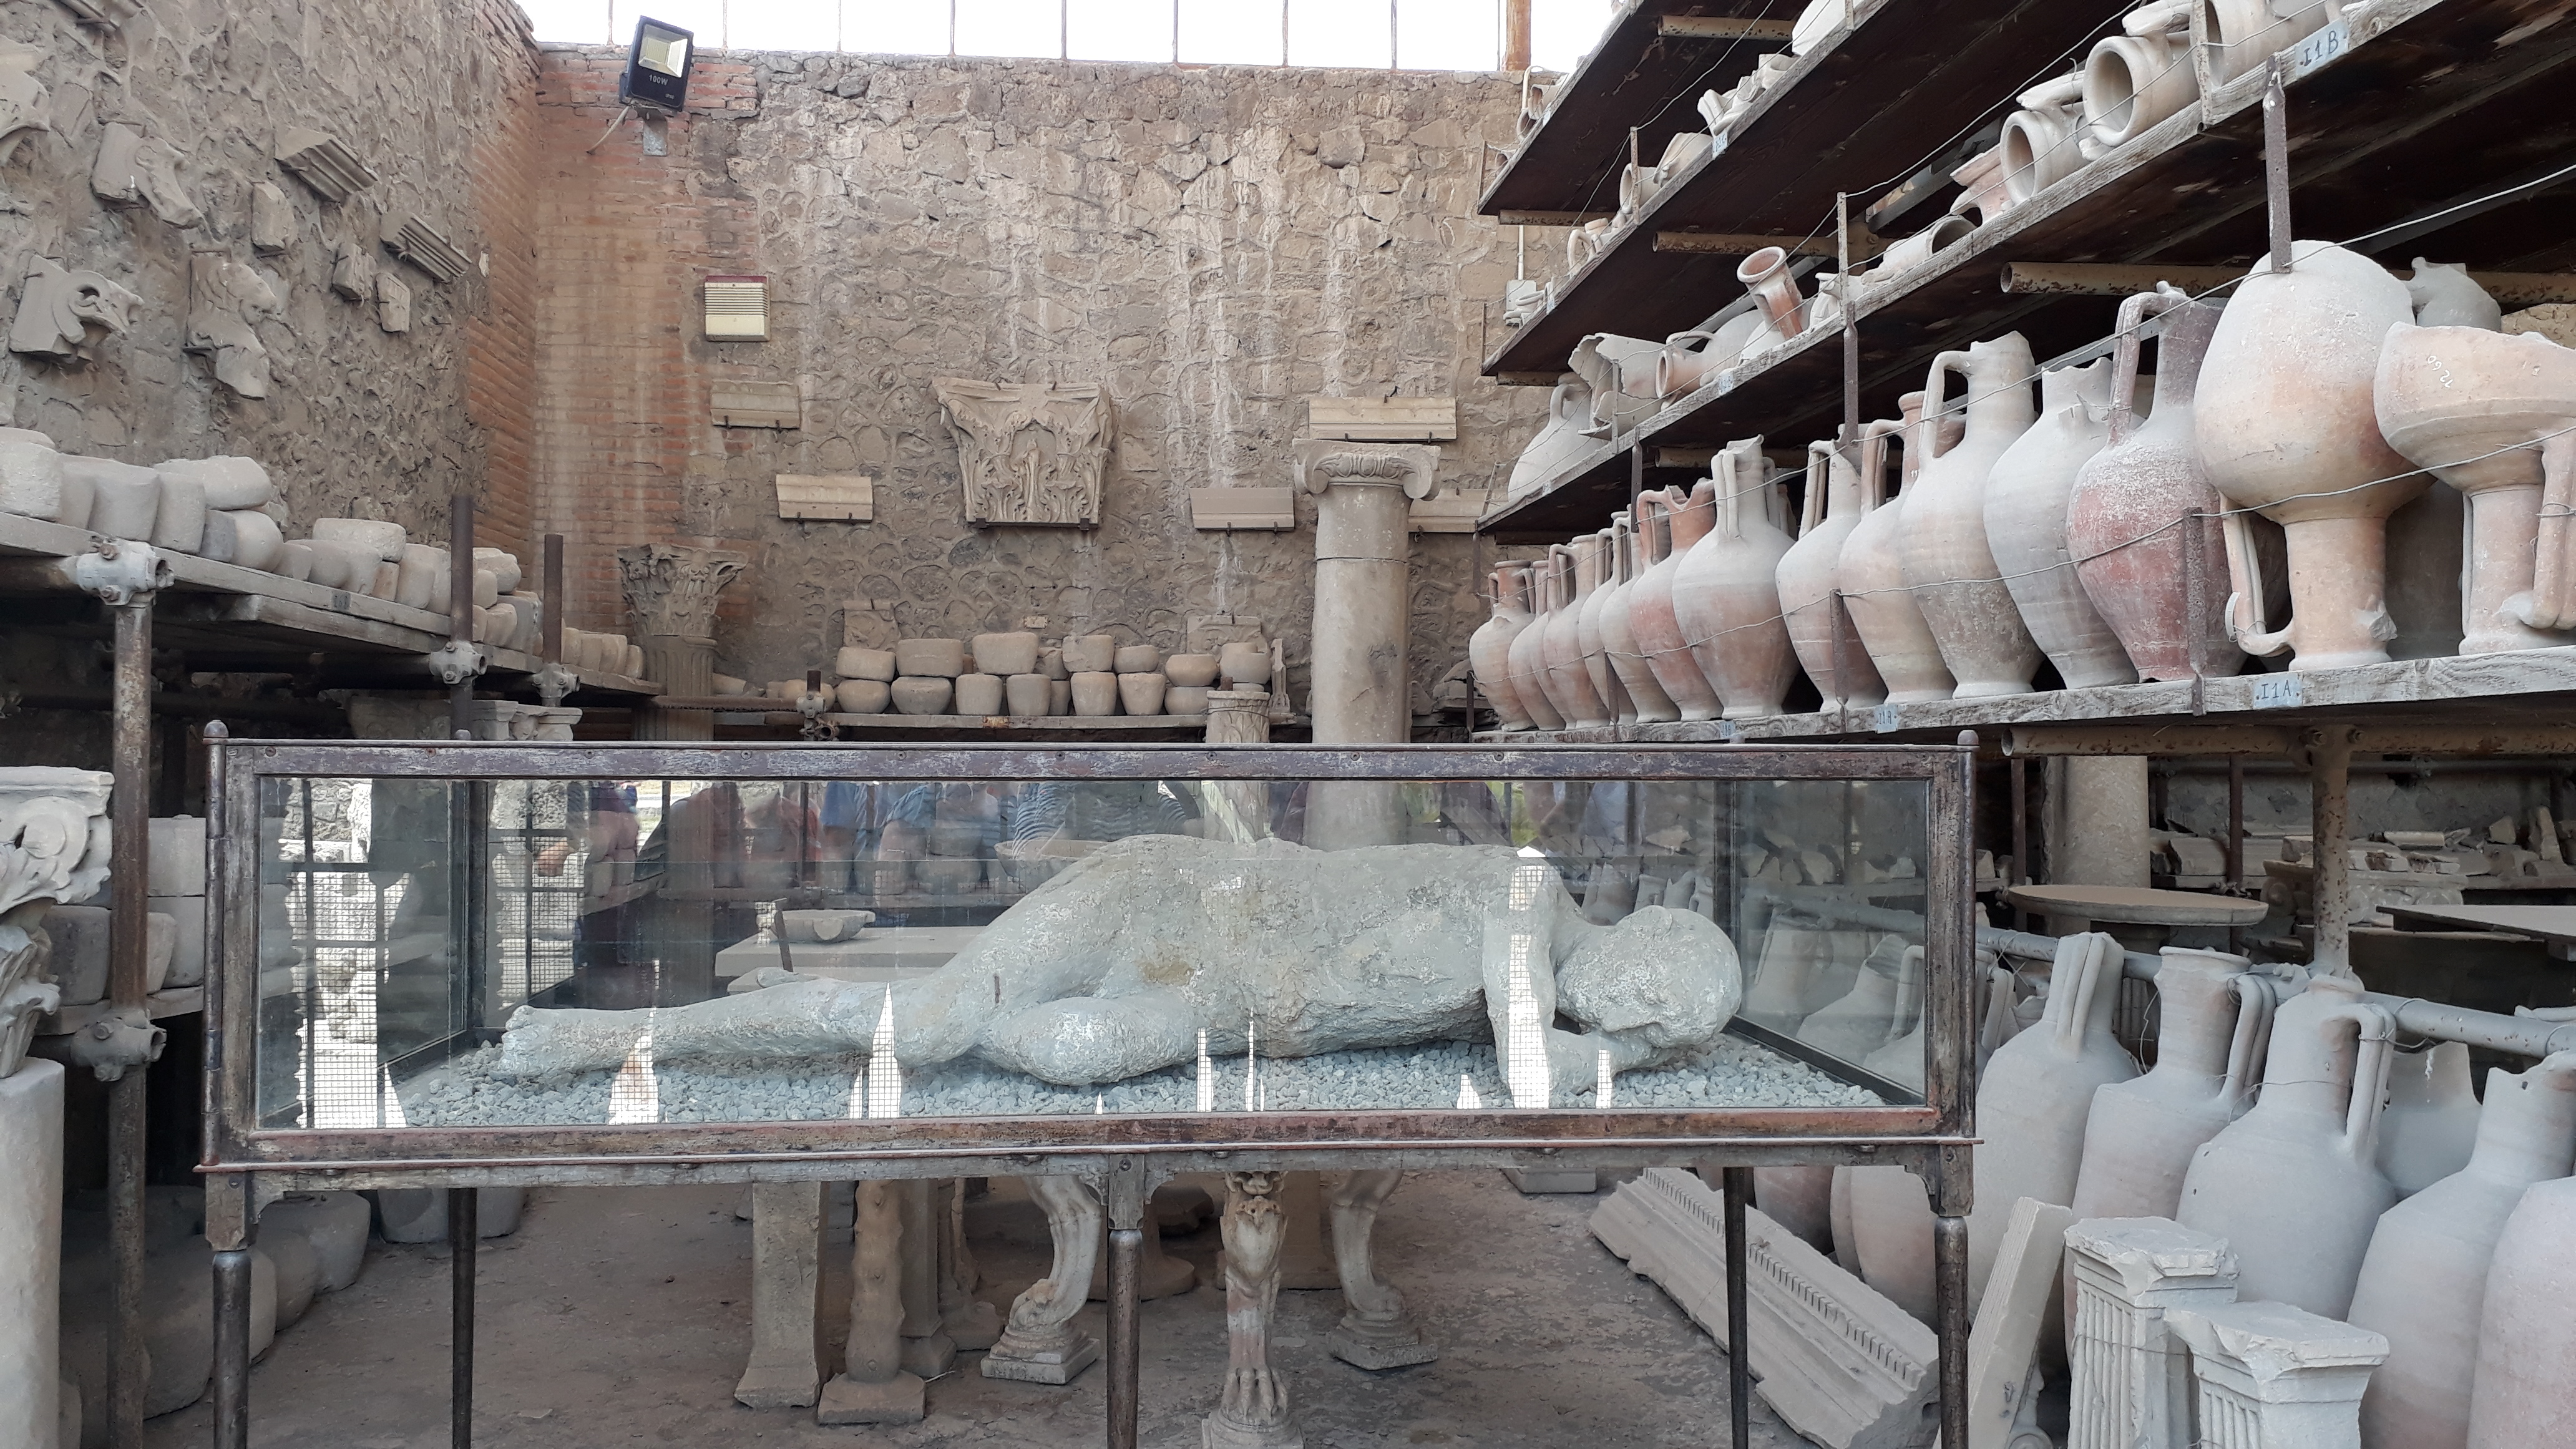 Gipsstatue und Tongefäße von den Ausgrabungen in der antiken Stadt Pompeji, die vor nahezu 2000 Jahren bei einem verheerenden Vulkanausbruch unter Asche und Lavagestein verschwand.
Kreuzfahrtausflug Pompeji und Vesuv